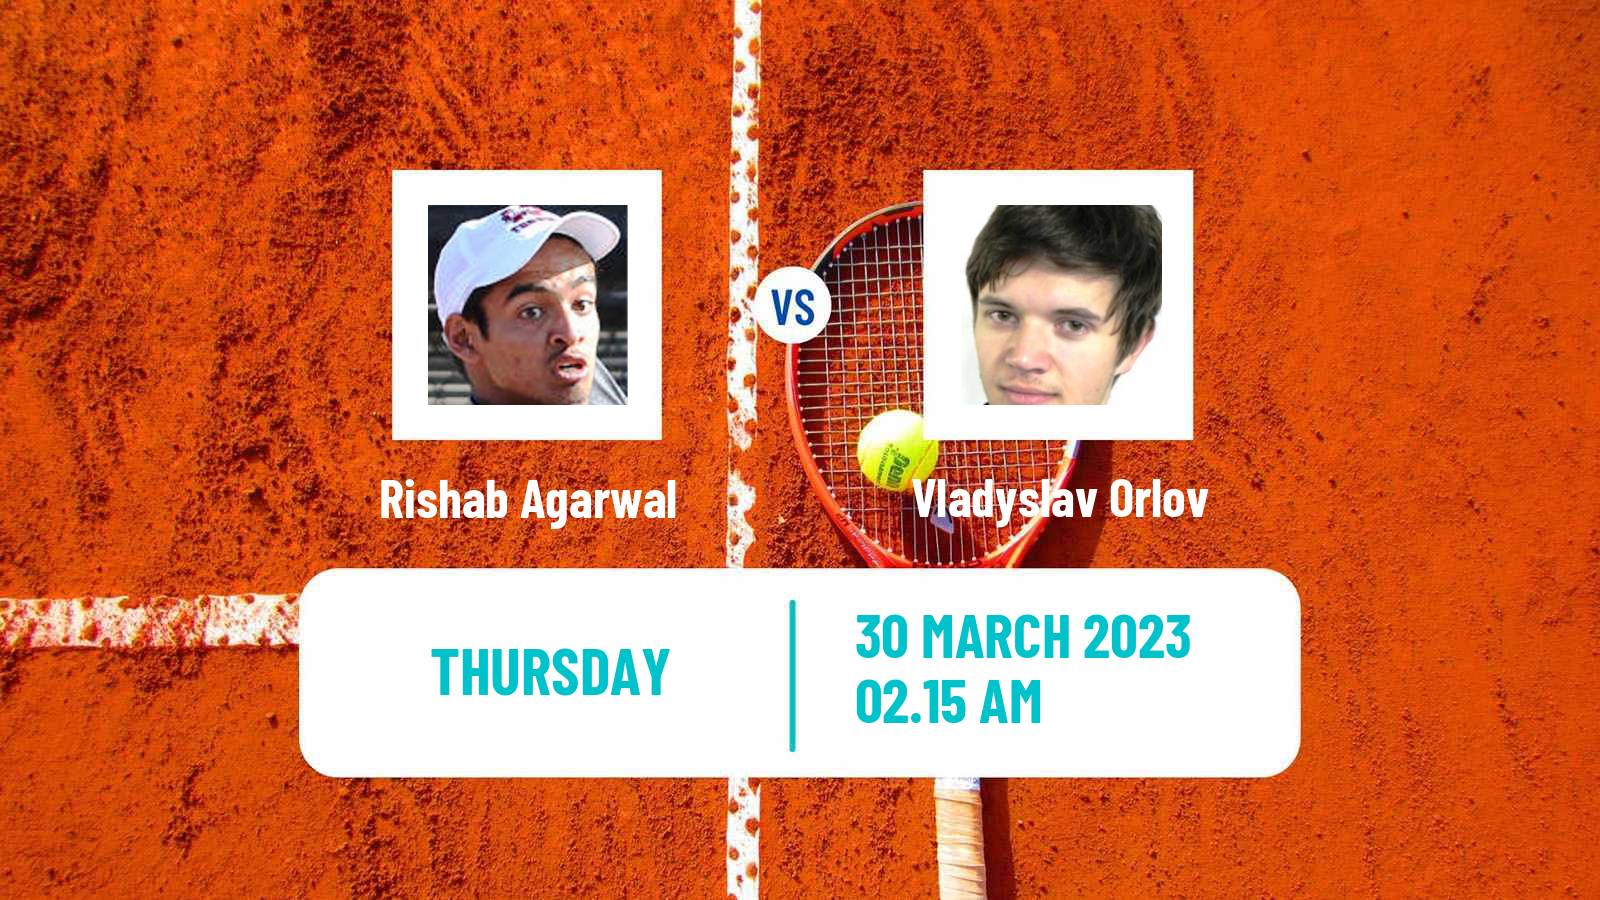 Tennis ITF Tournaments Rishab Agarwal - Vladyslav Orlov